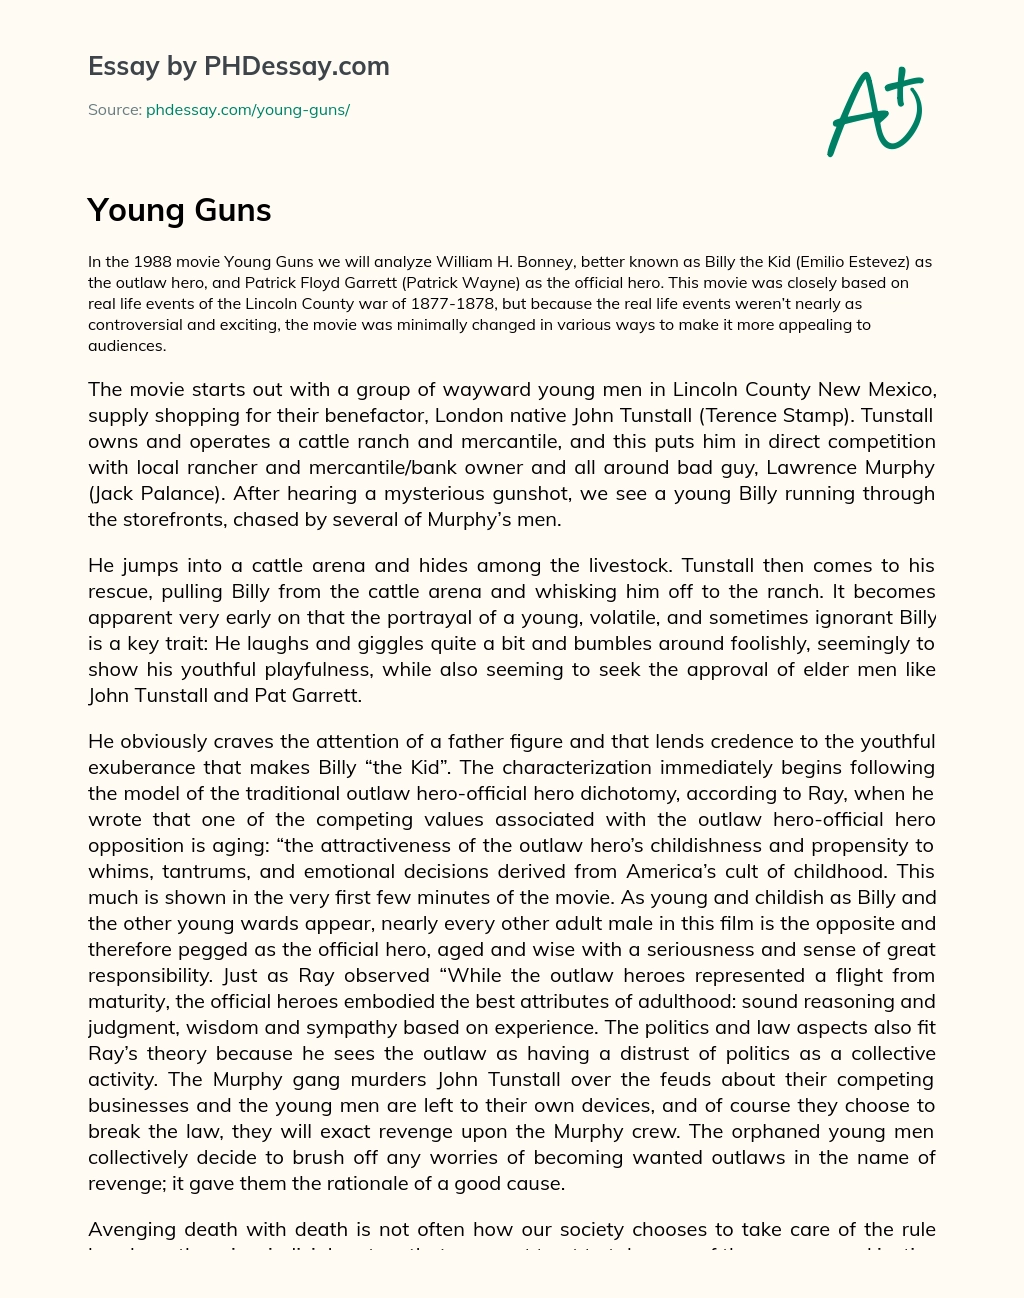 Young Guns essay